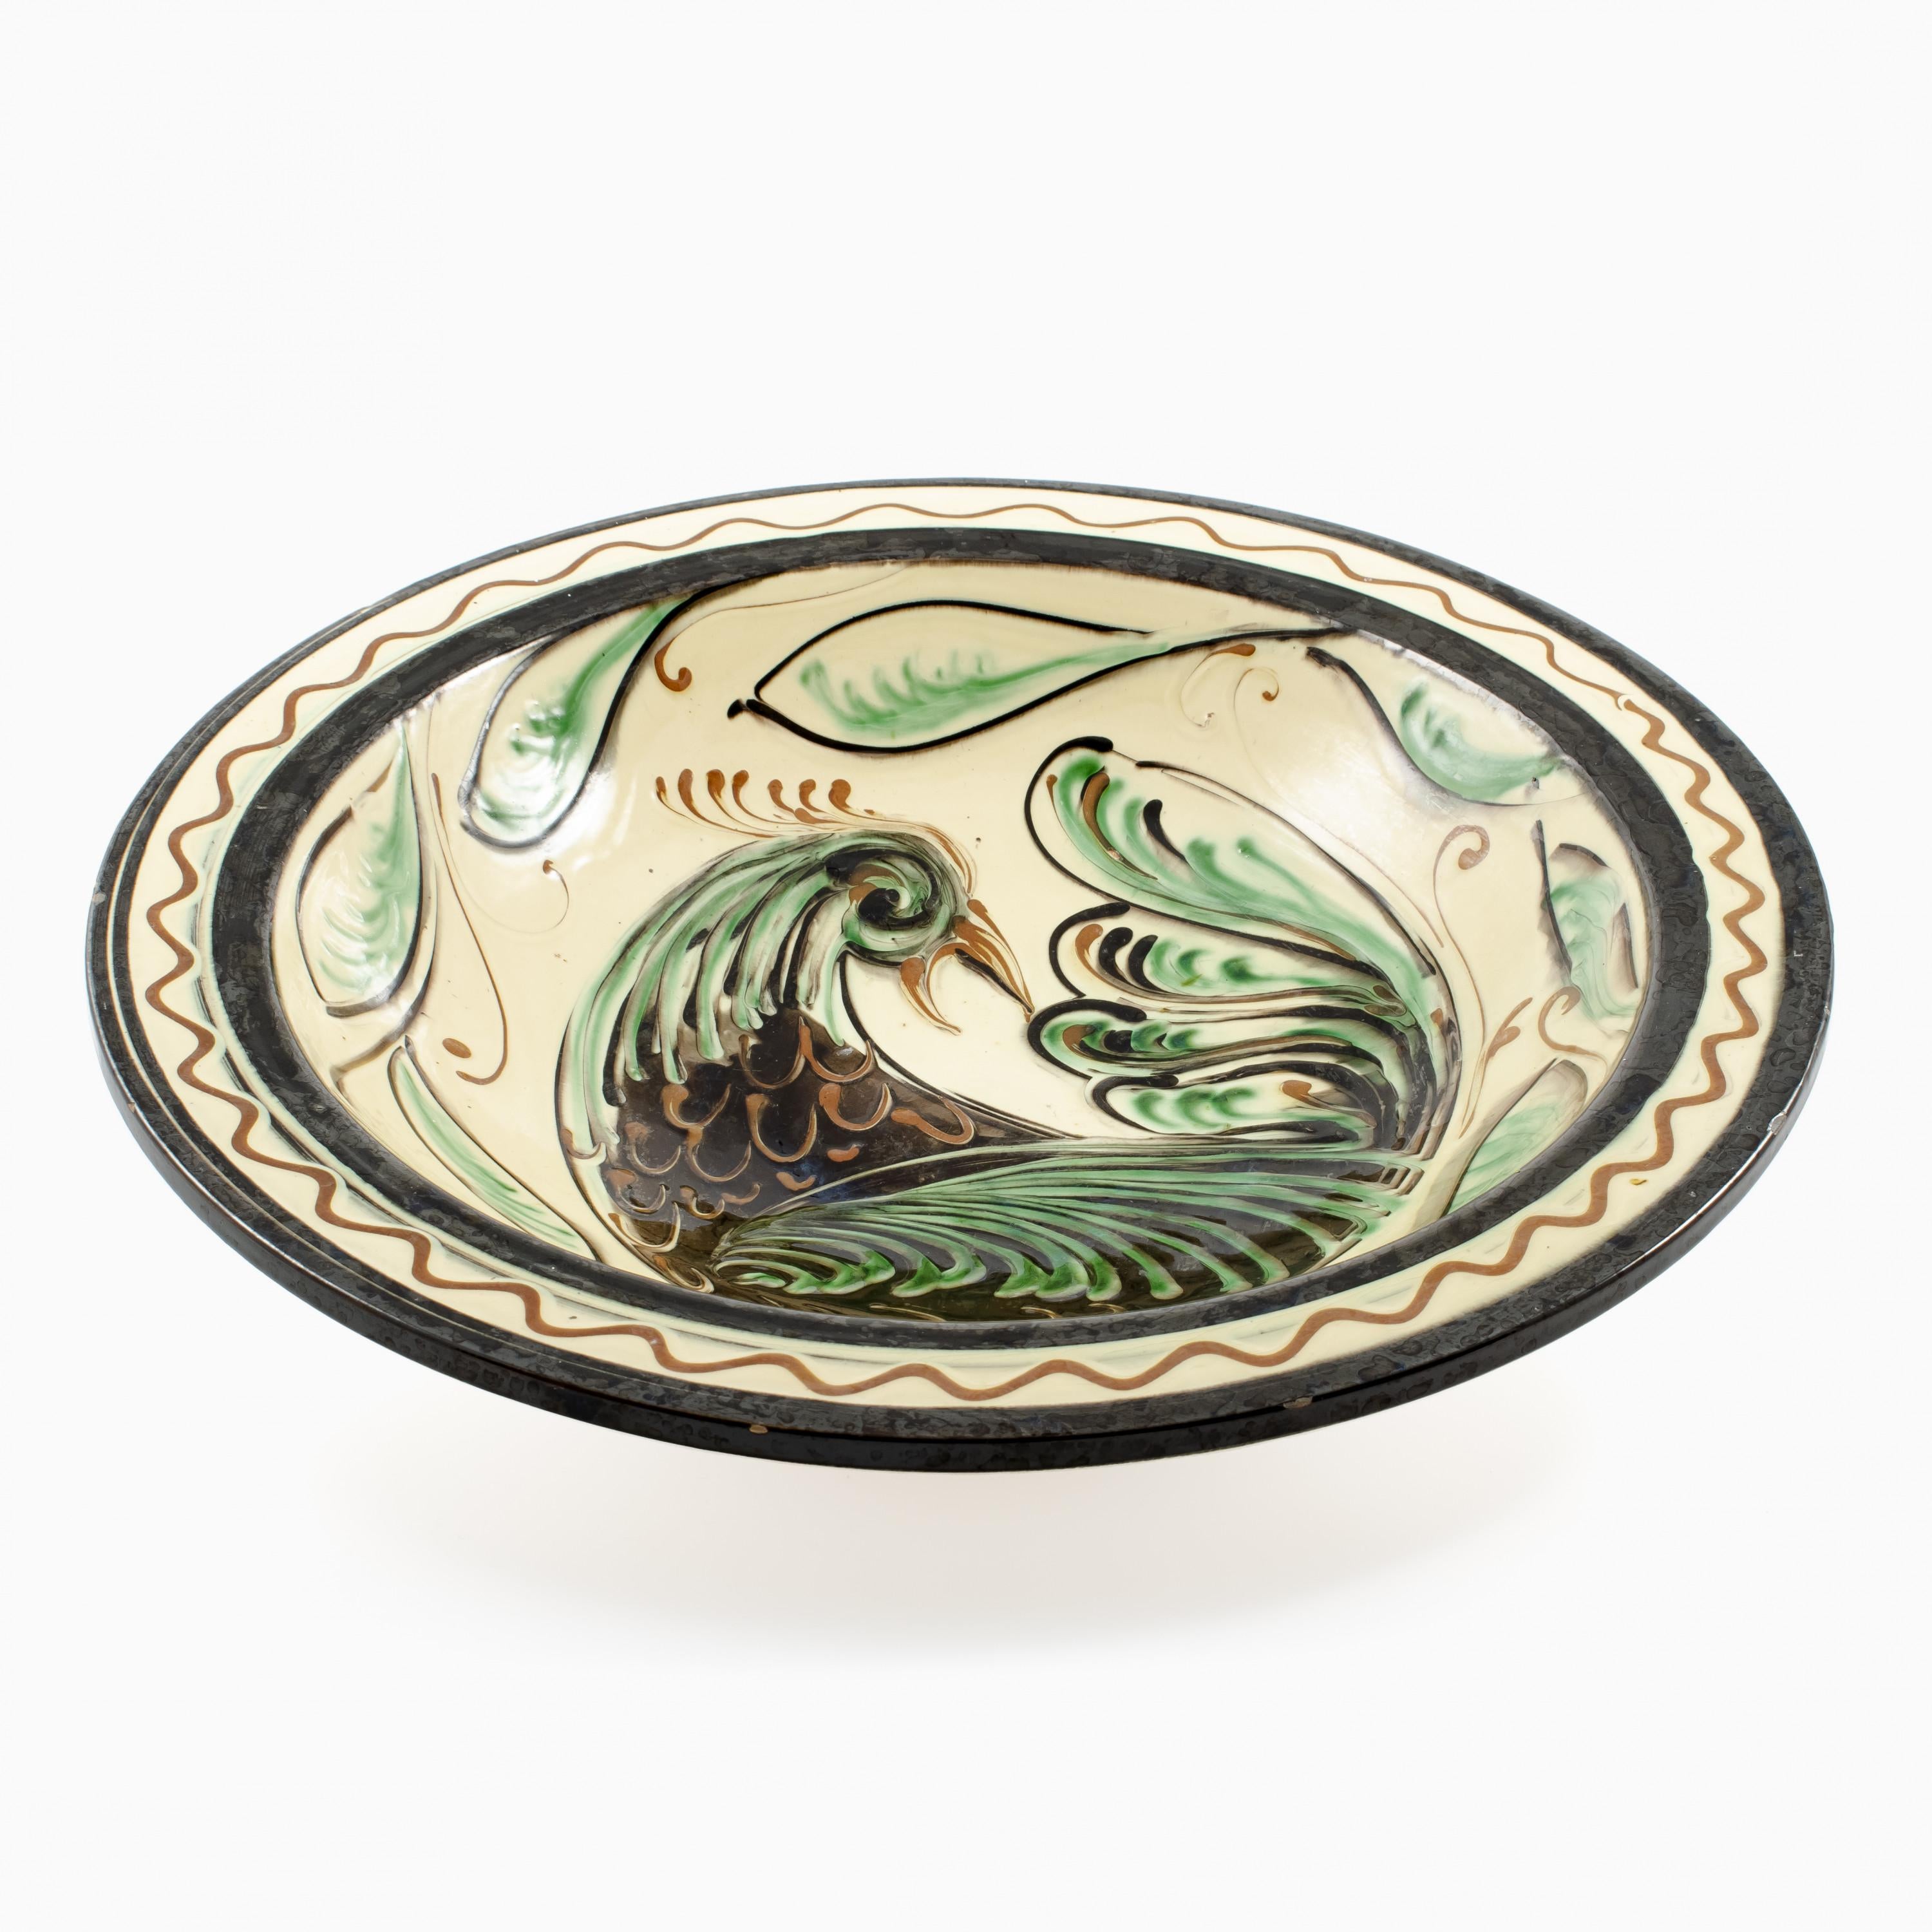 Grand plat unique en céramique, Art Nouveau.
Design Julia Kabel pour Kähler, environ 1910 - 1920.
Glace polychrome, décorée d'oiseaux et de feuillages.

Bon état. 
Petits défauts de glaçure sur le bord.
 